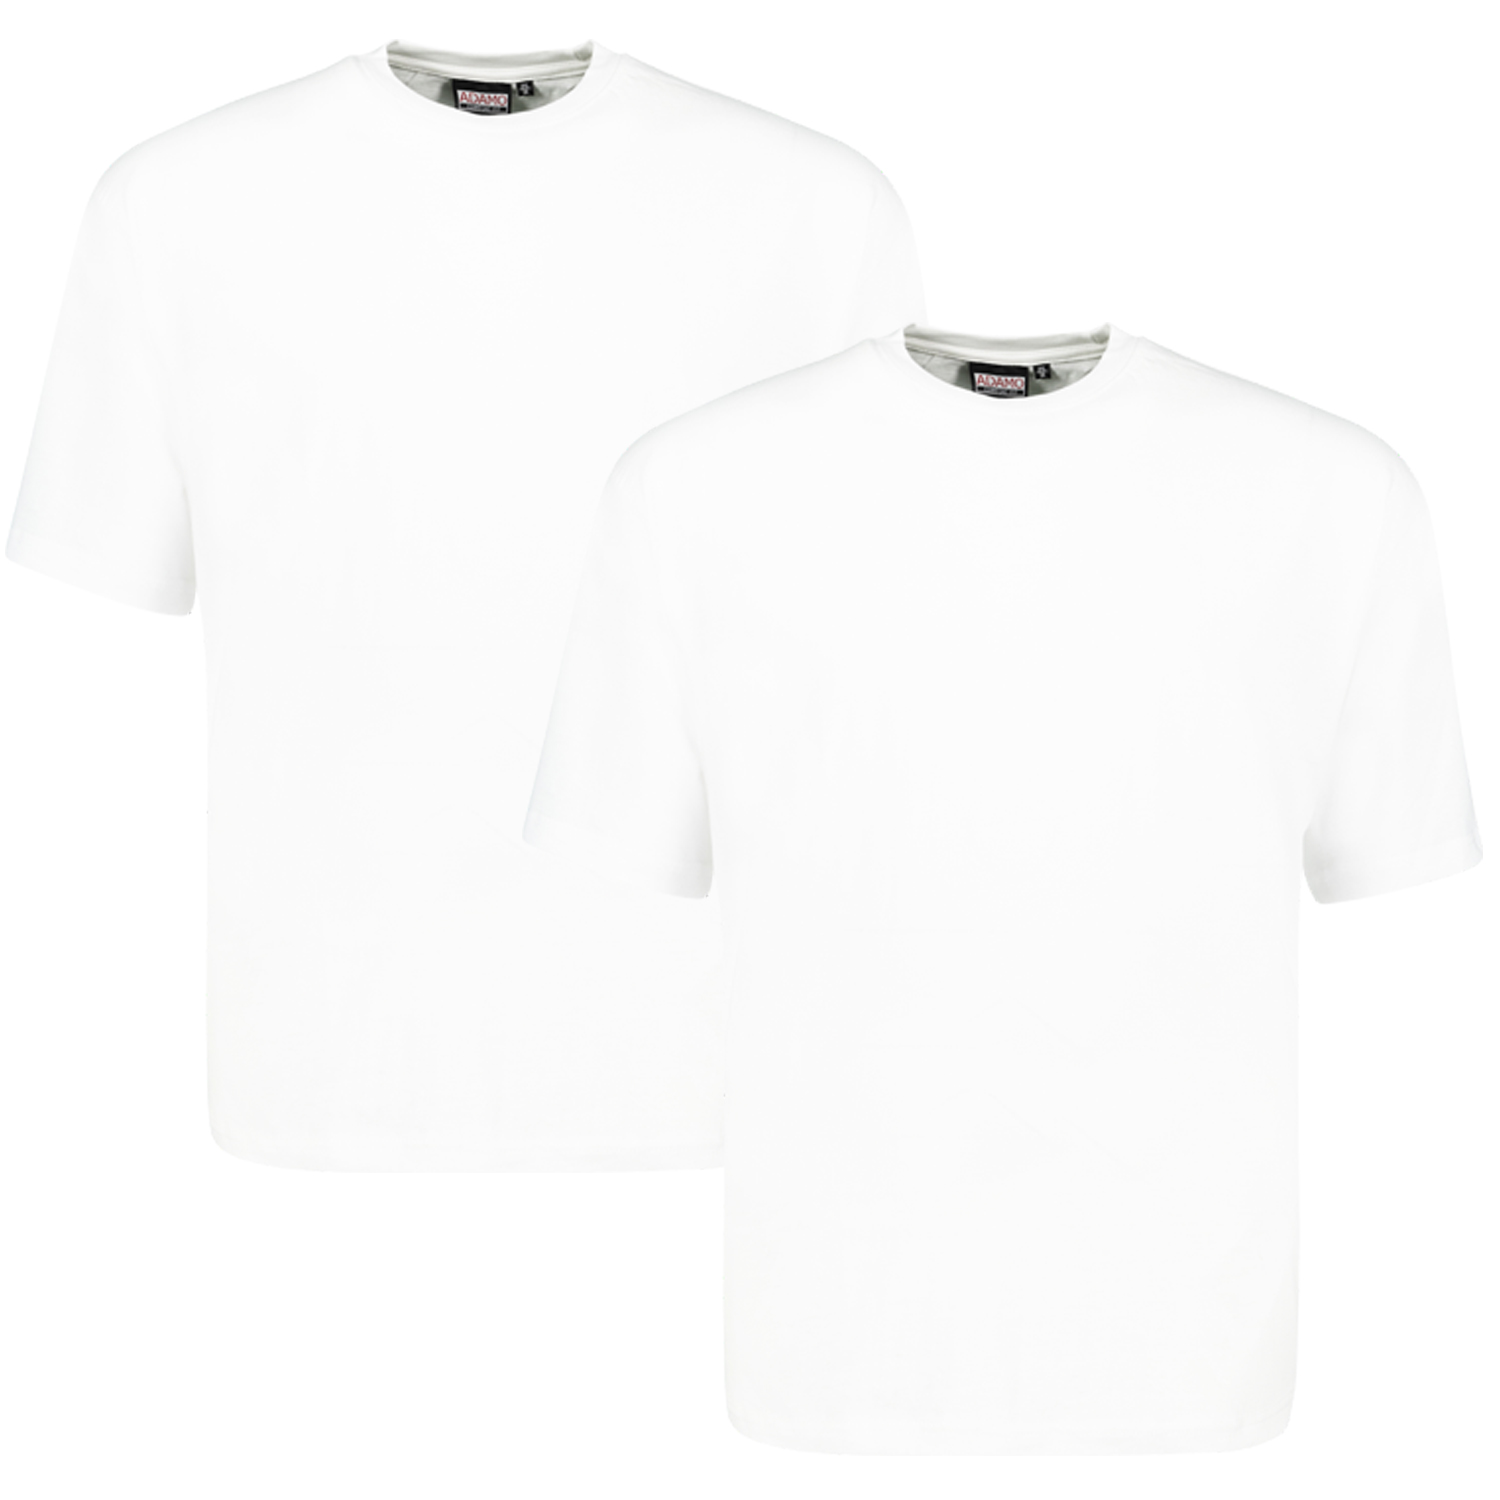 T-shirt blanc MARLON CONFORT FIT by ADAMO jusqu'à la taille 12XL - pack de deux